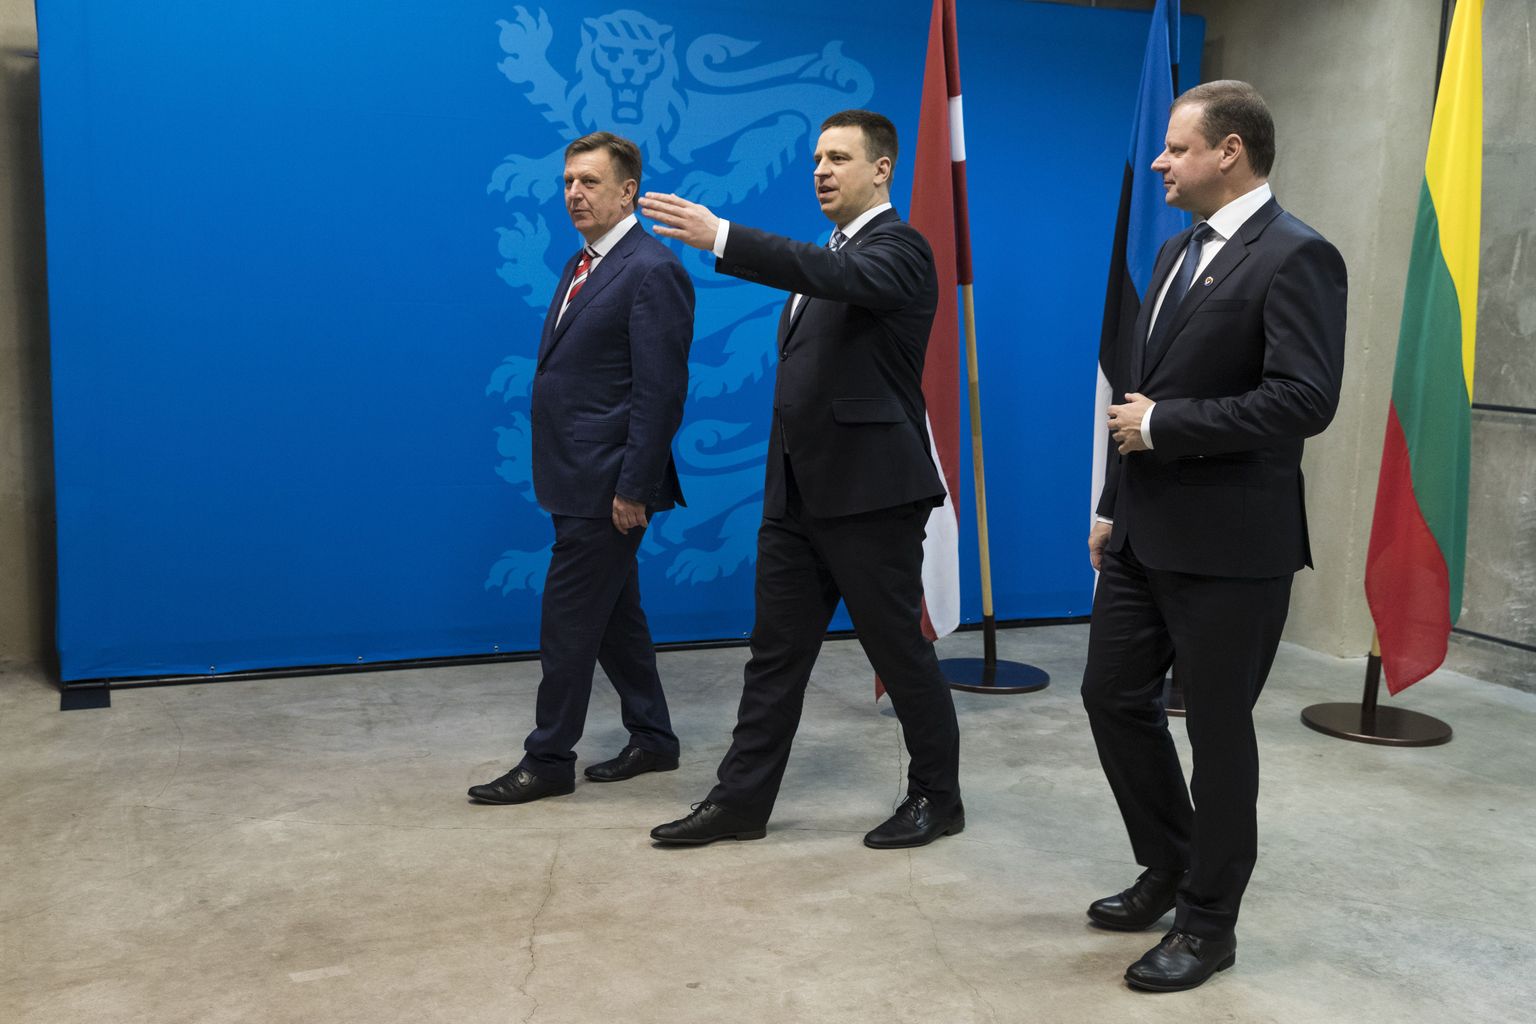 Läti peaminister Māris Kučinskis, Eesti peaminsiter Jüri Ratas, Leedu peaminister Saulius Skvernelis seisavad kindlalt Nord Stream 2 gaasijuhtme ehituse vastu.